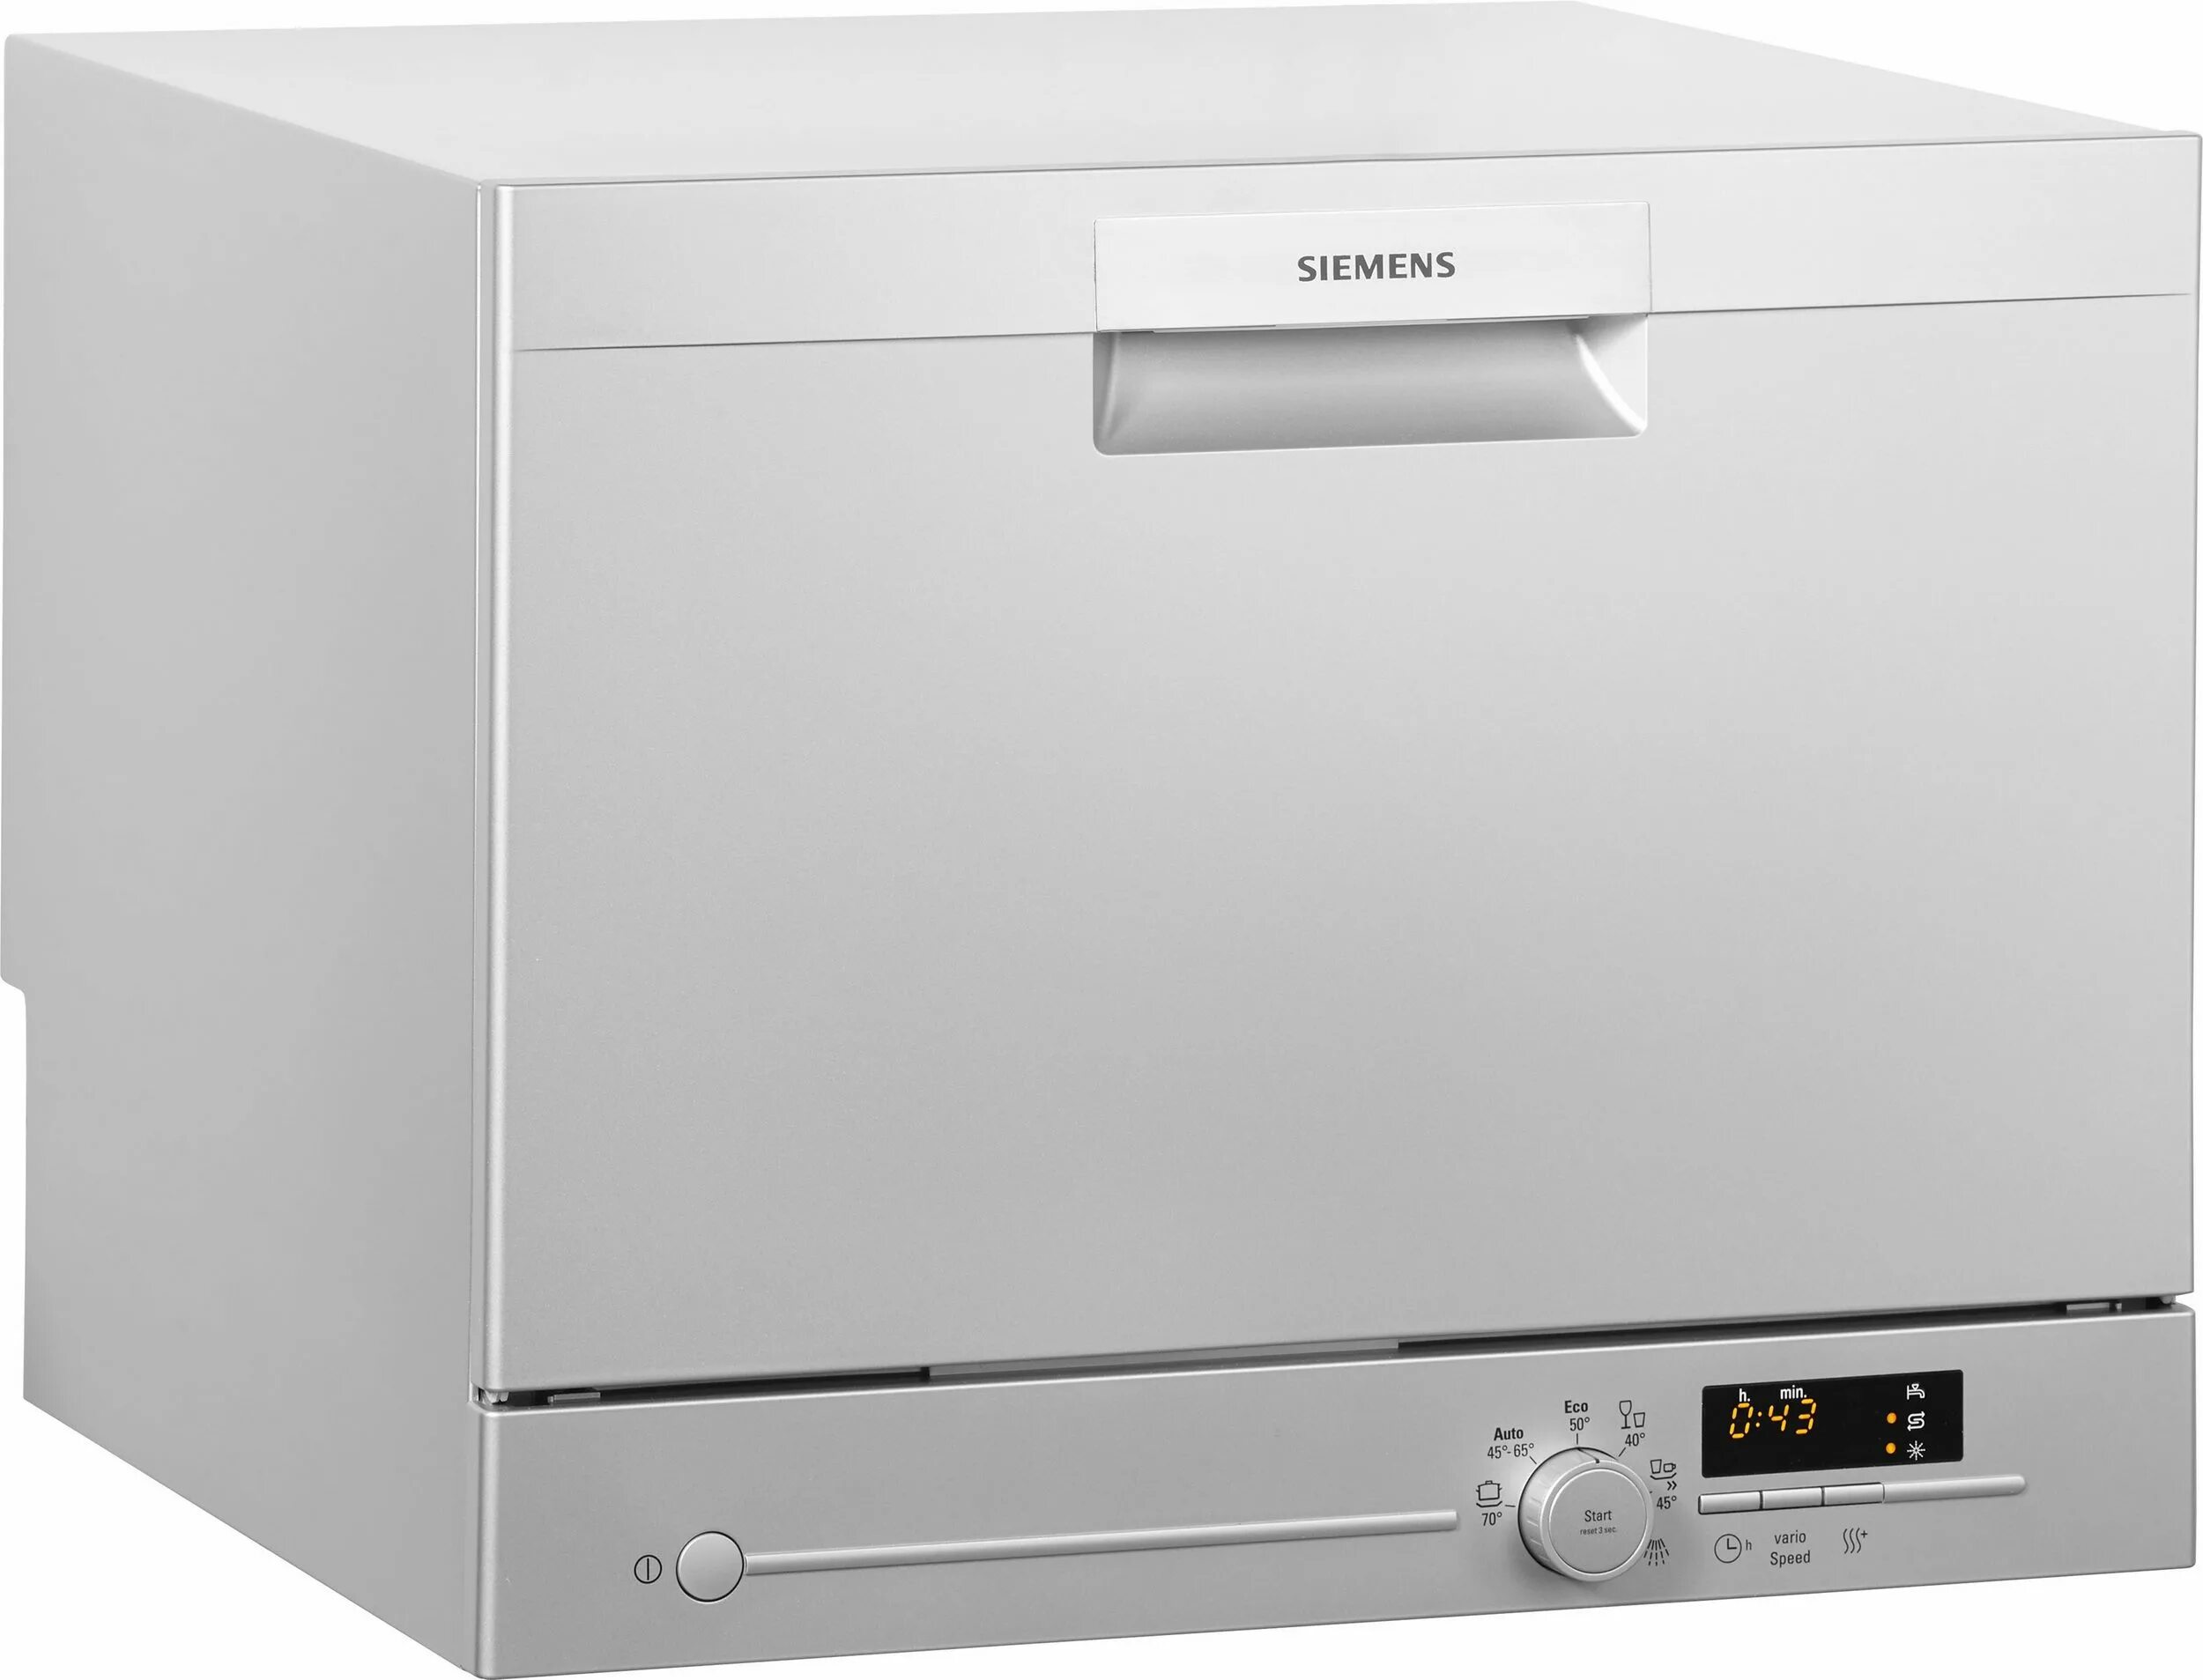 Siemens посудомоечная купить. Siemens iq300 посудомоечная машина. Посудомоечная машина Siemens sk26e821eu. Посудомоечная машина настольная Siemens.